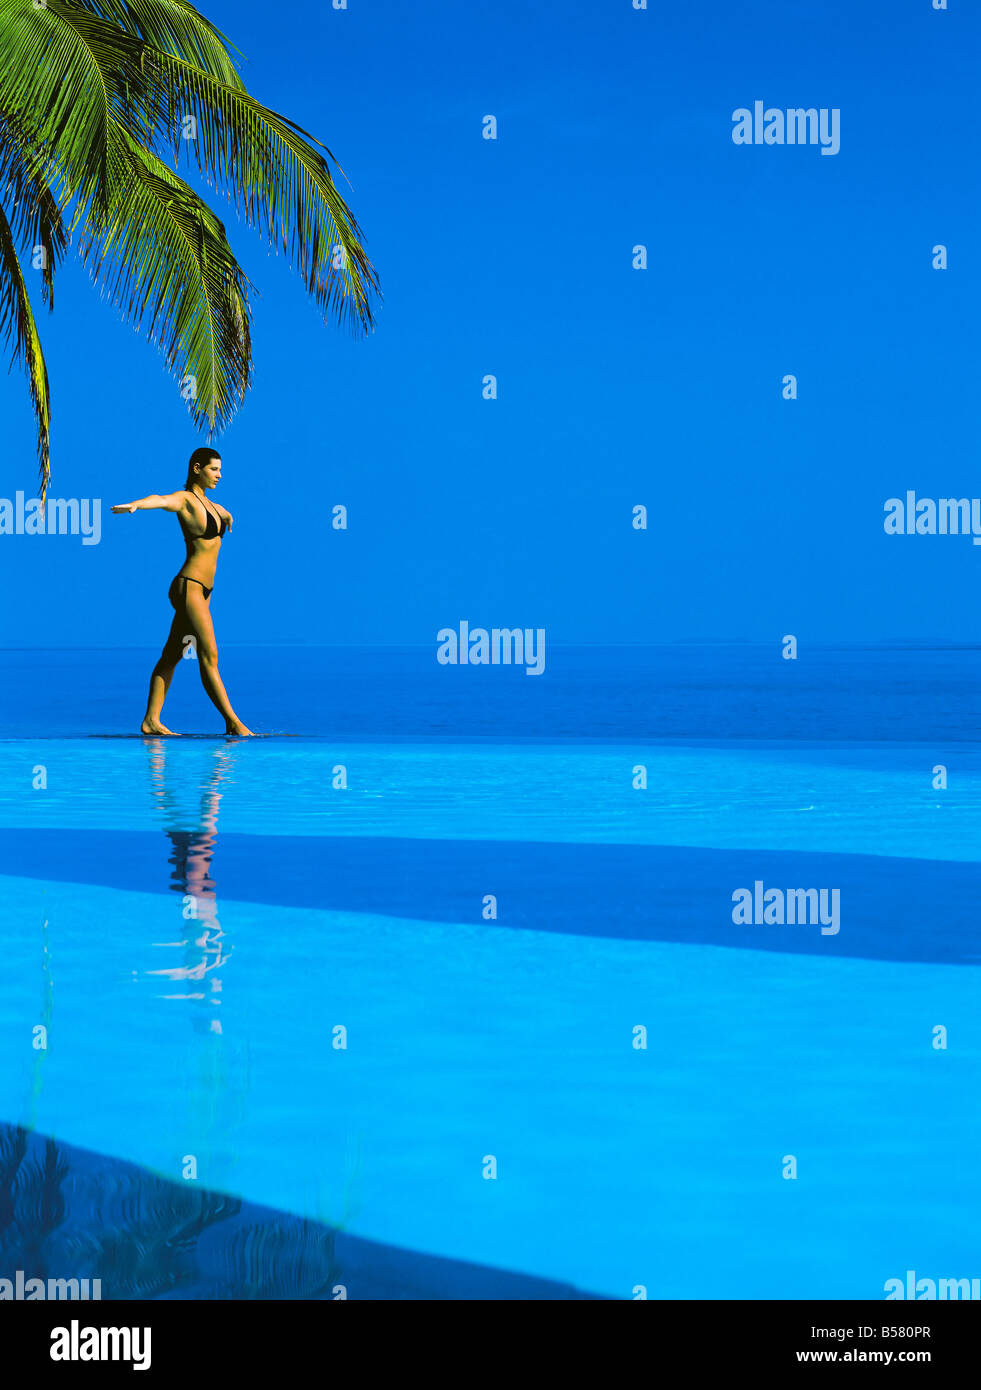 Bilanciamento della donna sul bordo della piscina a sfioro, Maldive, Oceano Indiano, Asia Foto Stock